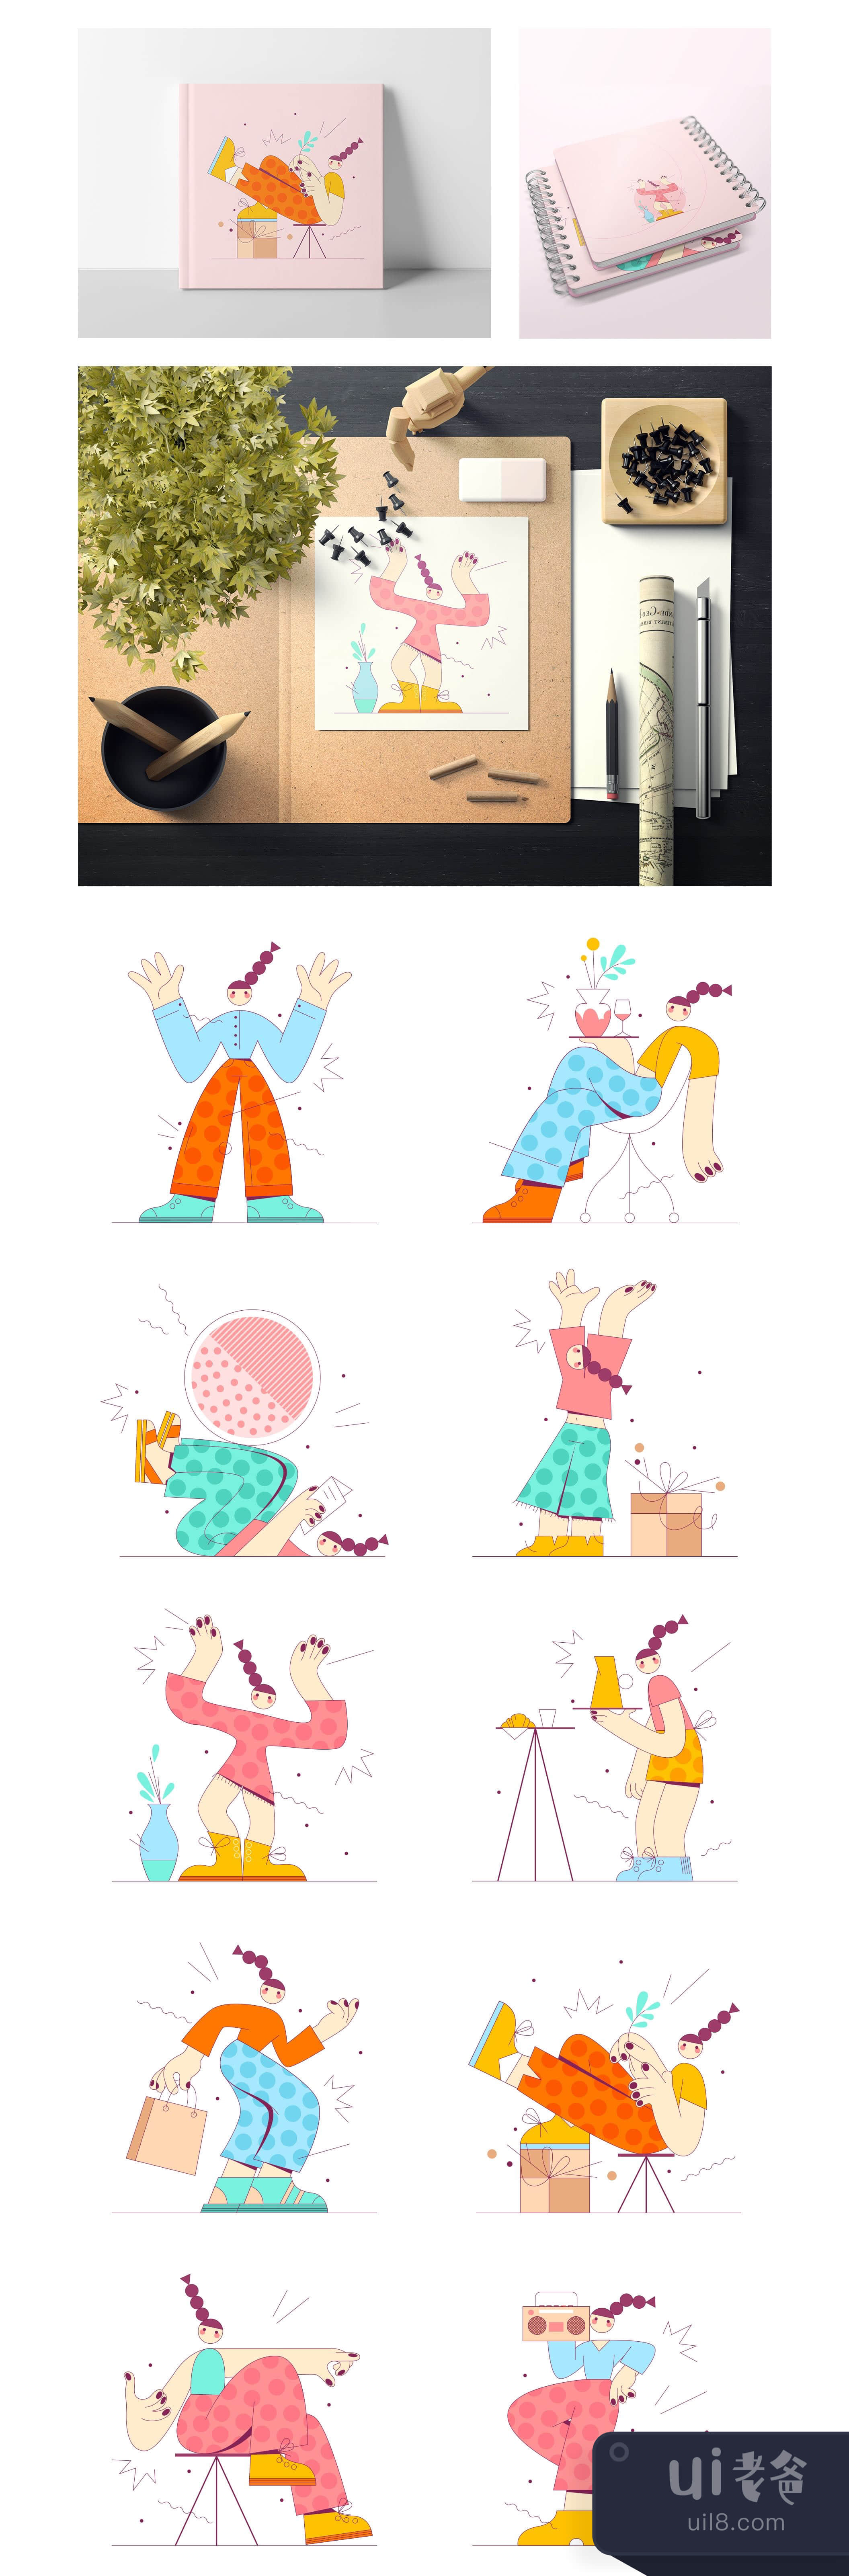 有趣的人物插图2 (Fun characters illustration 2)插图1